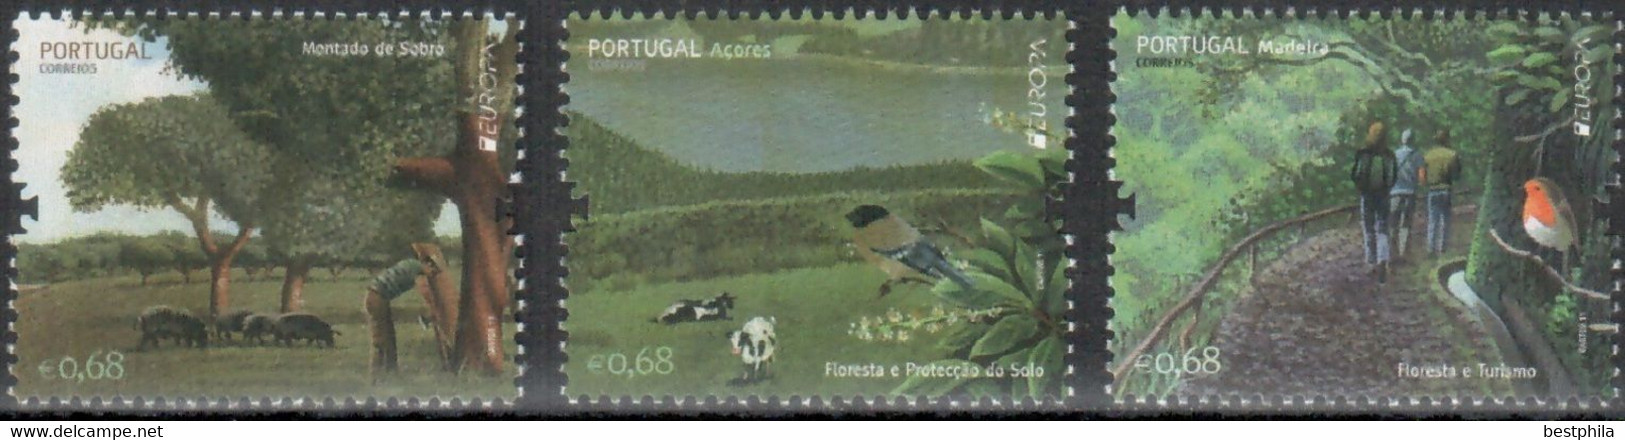 Europa Cept - 2011 - Portugal, Madeira, Azoren - (Forest) ** MNH - 2011